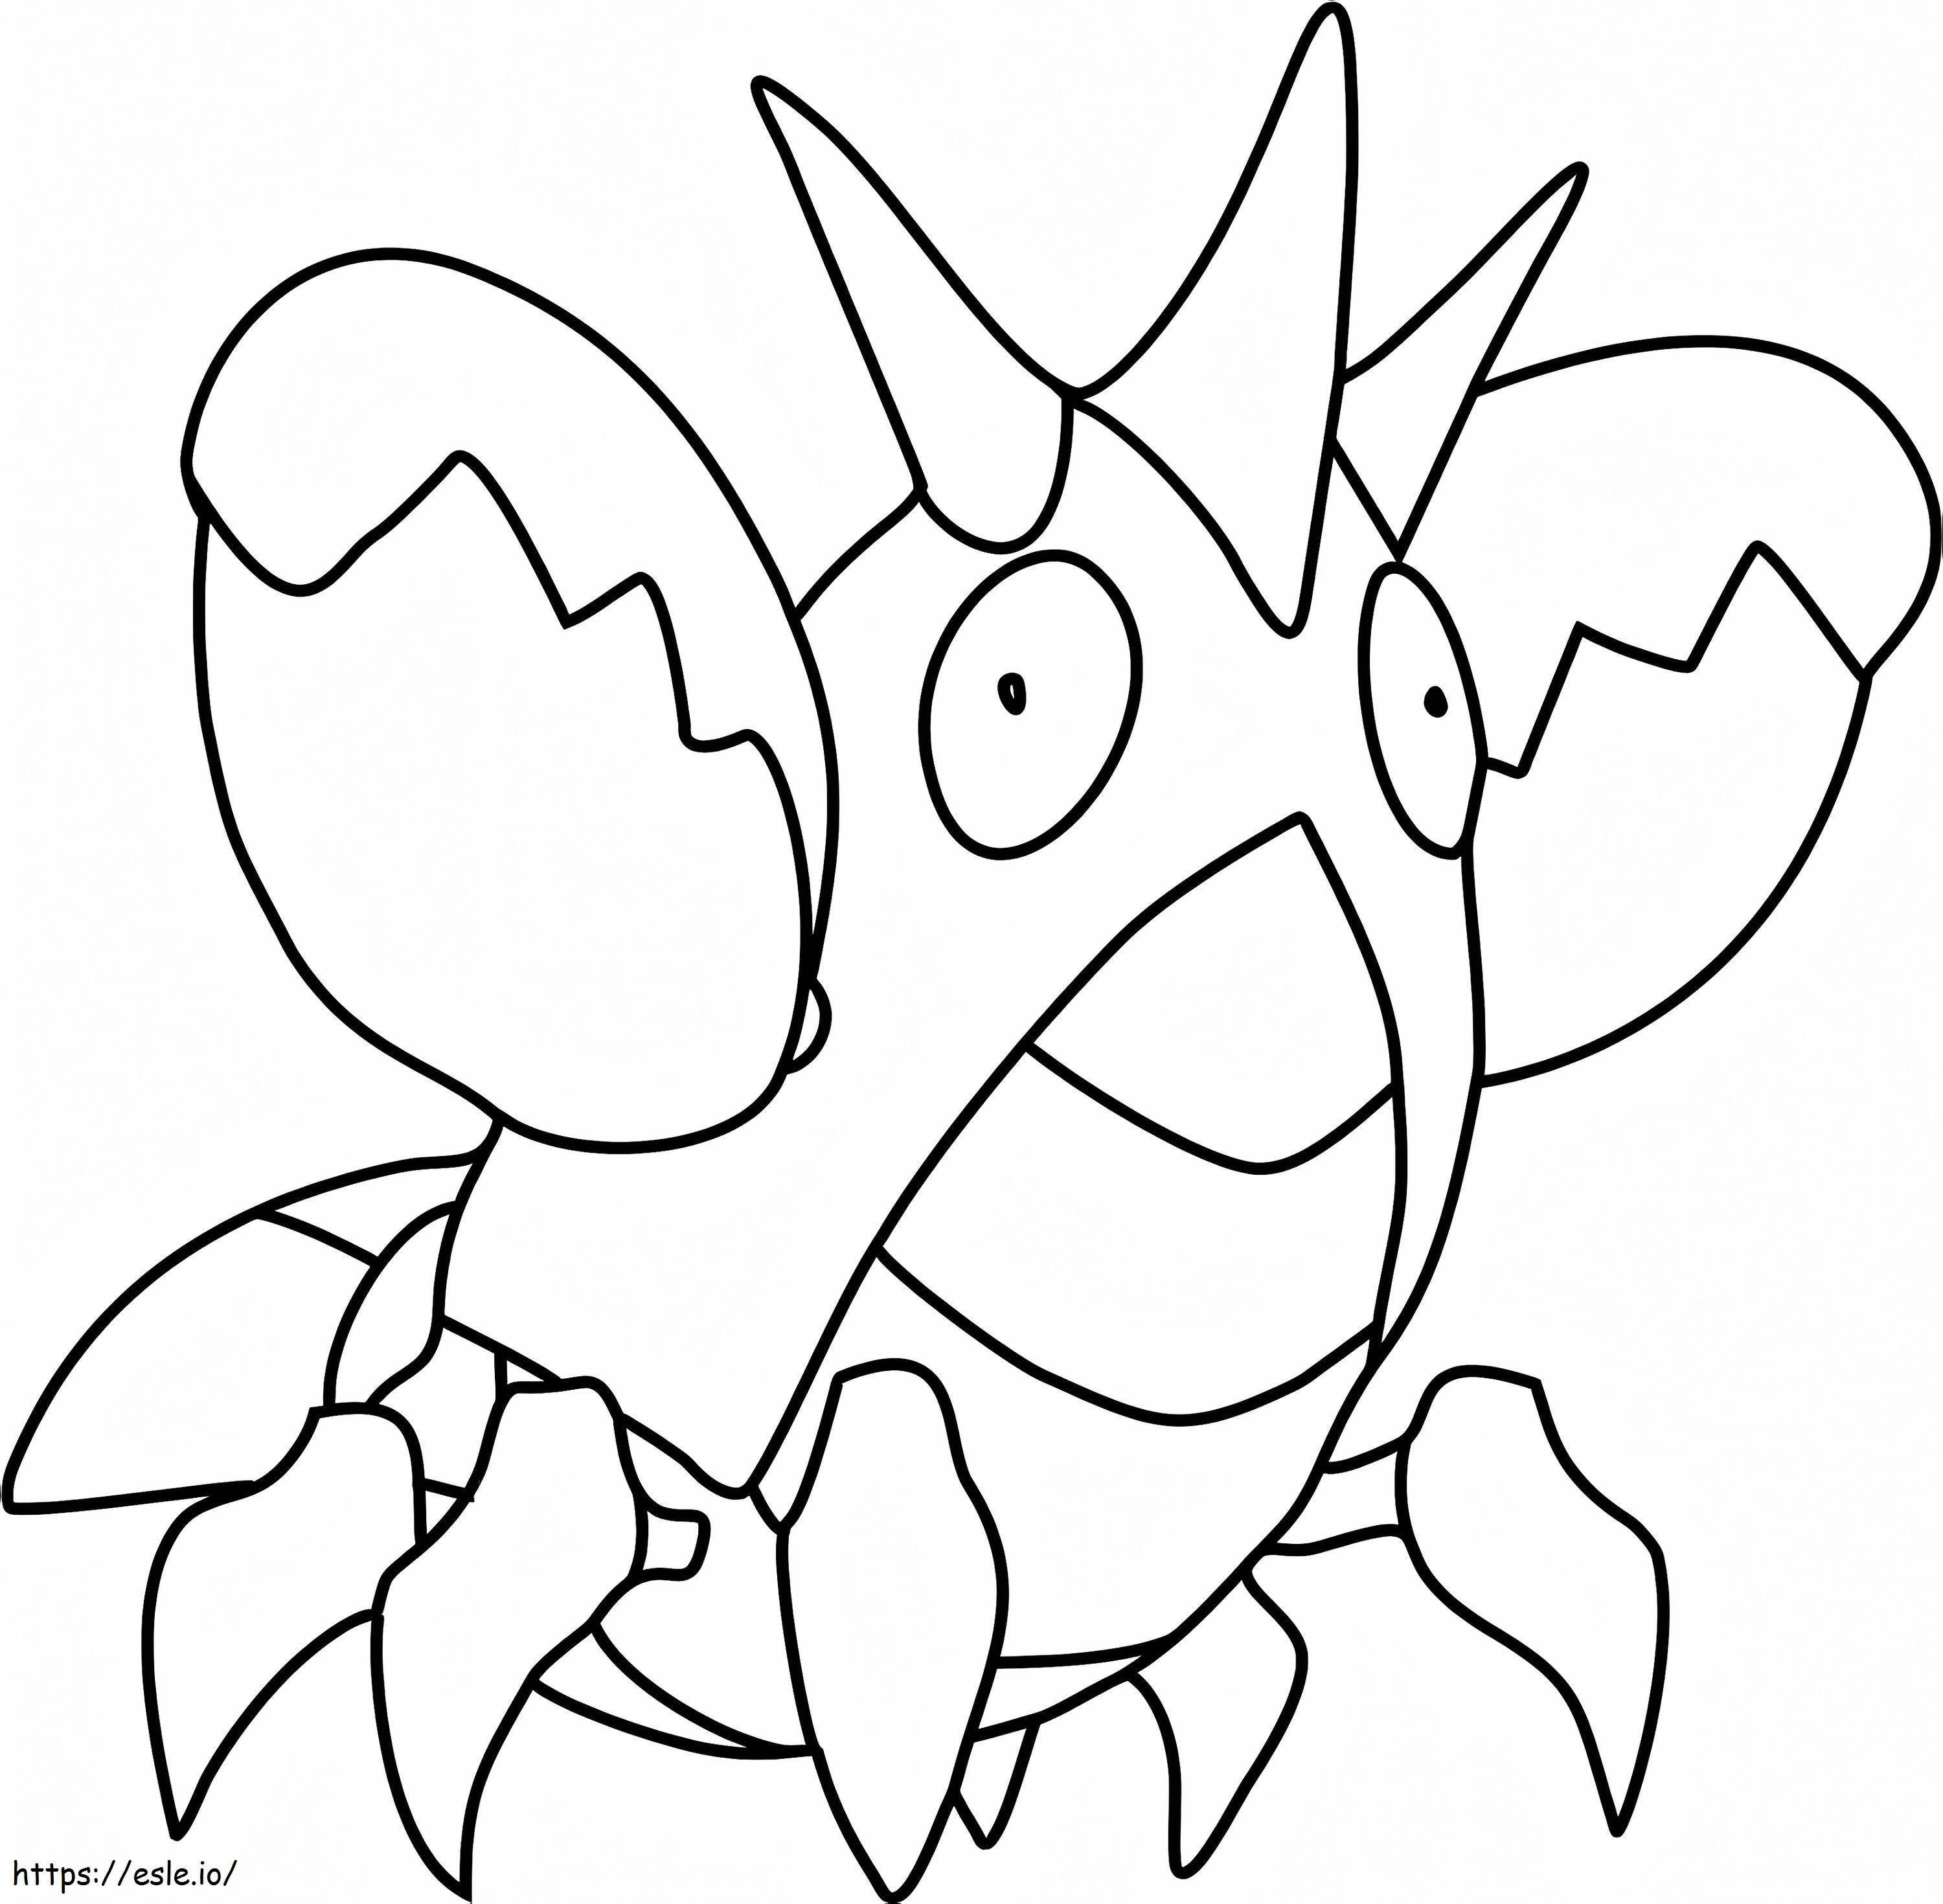 Coloriage Pokémon Corphish à imprimer dessin